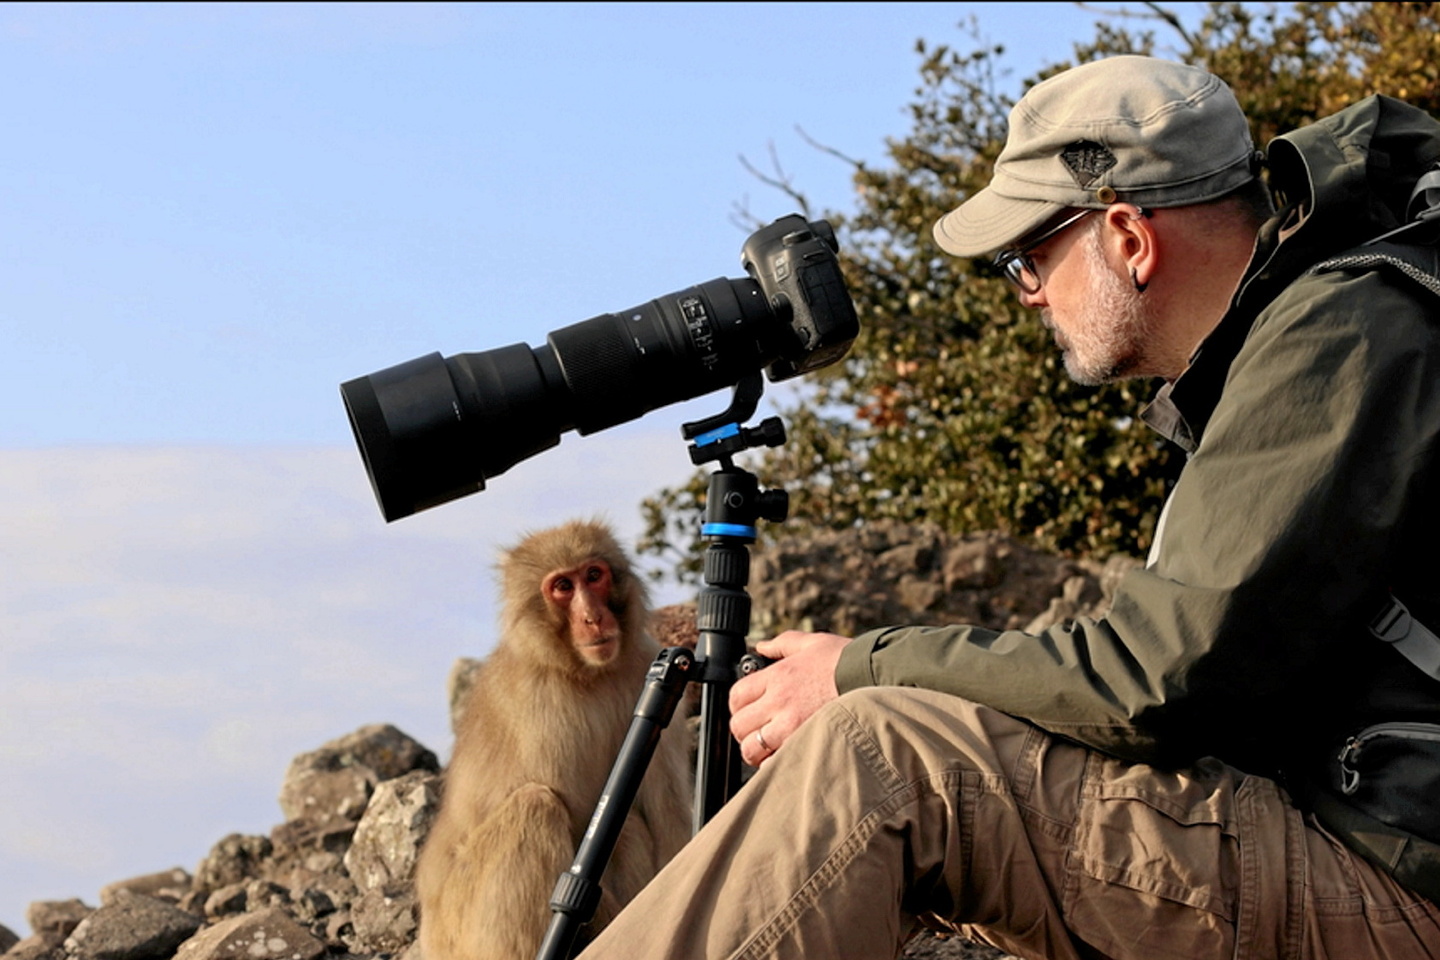 Les incroyables aventures d’un primatologue